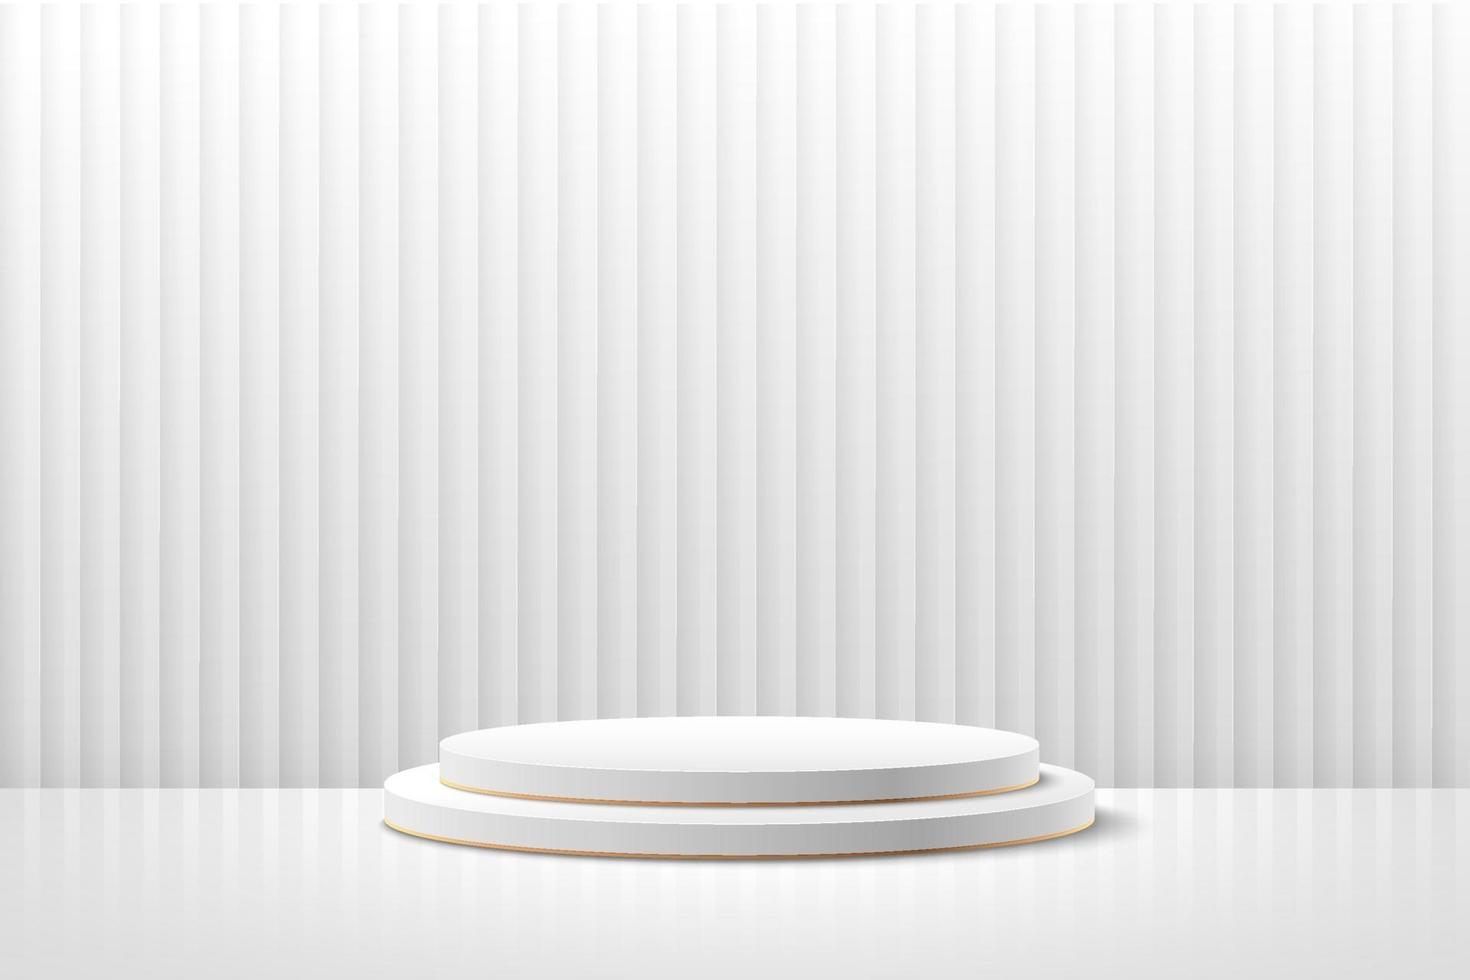 abstrakt rund display för produkt på webbplatsen i modern design. bakgrunds rendering med podium och minimal vit lager textur vägg scen, 3d-rendering geometrisk form vit och grå färg. vektor eps10